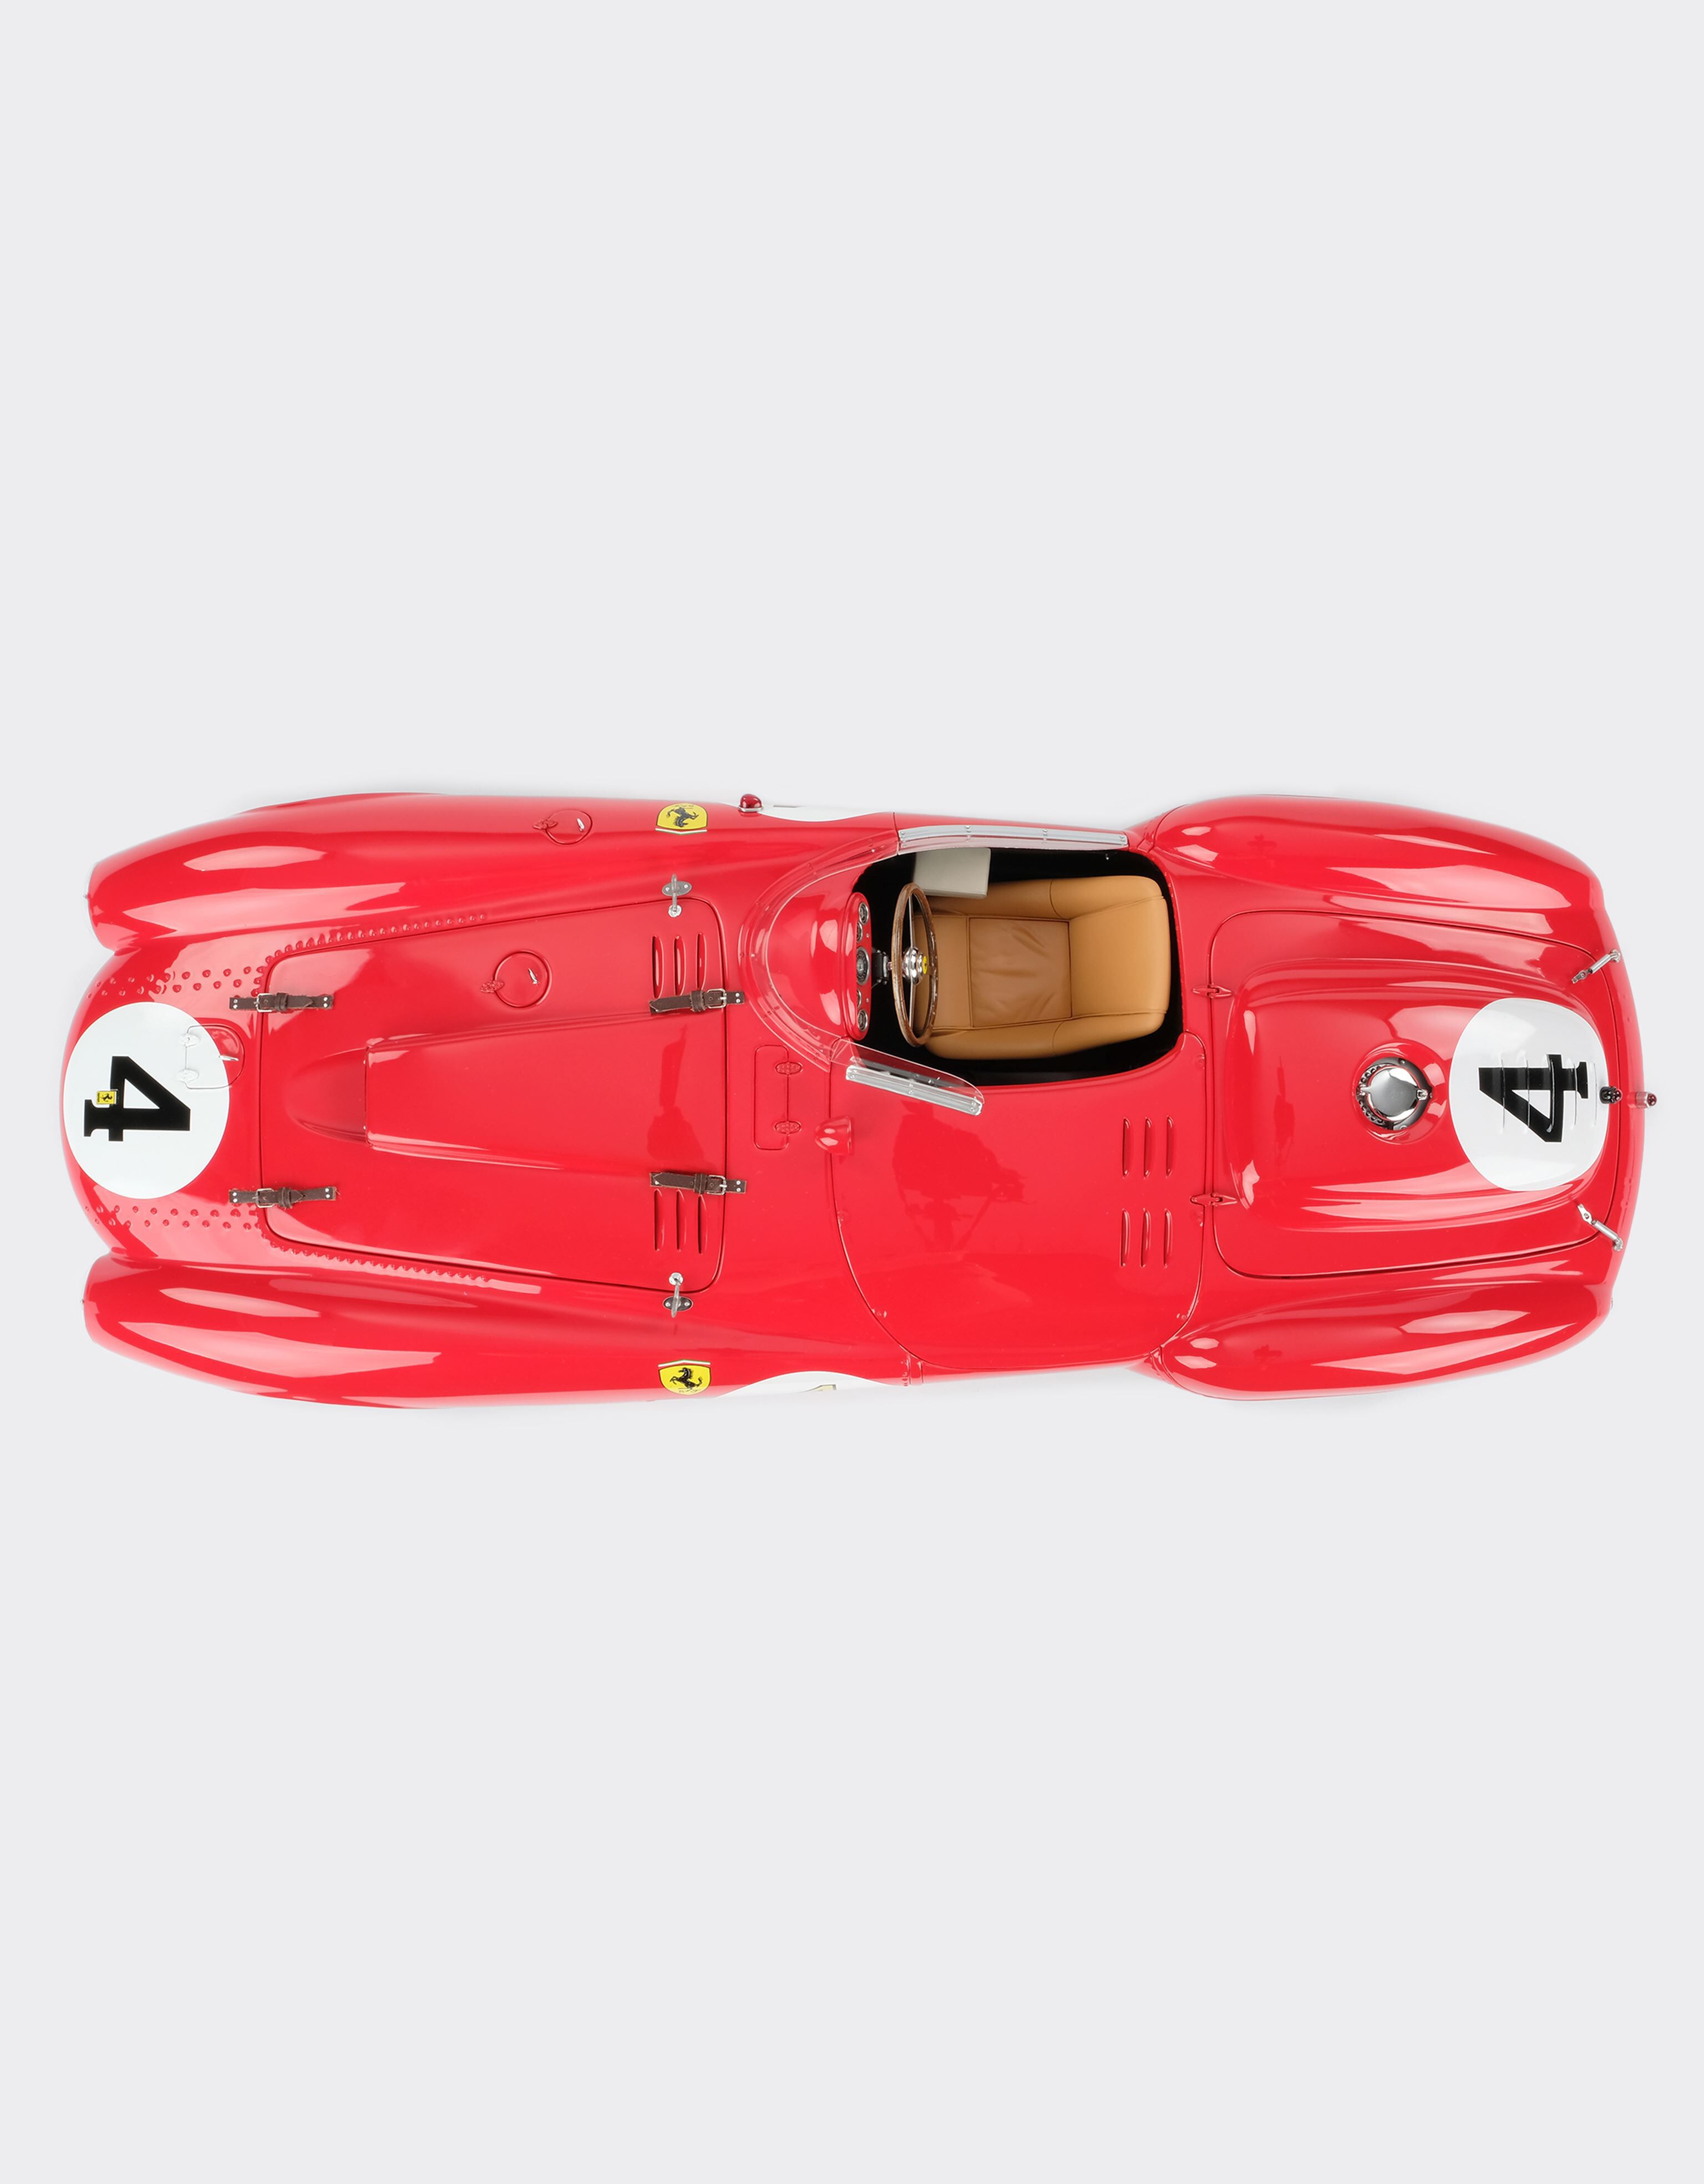 Ferrari Ferrari 375 Plus 1st Le Mans model in 1:8 scale Red L5241f